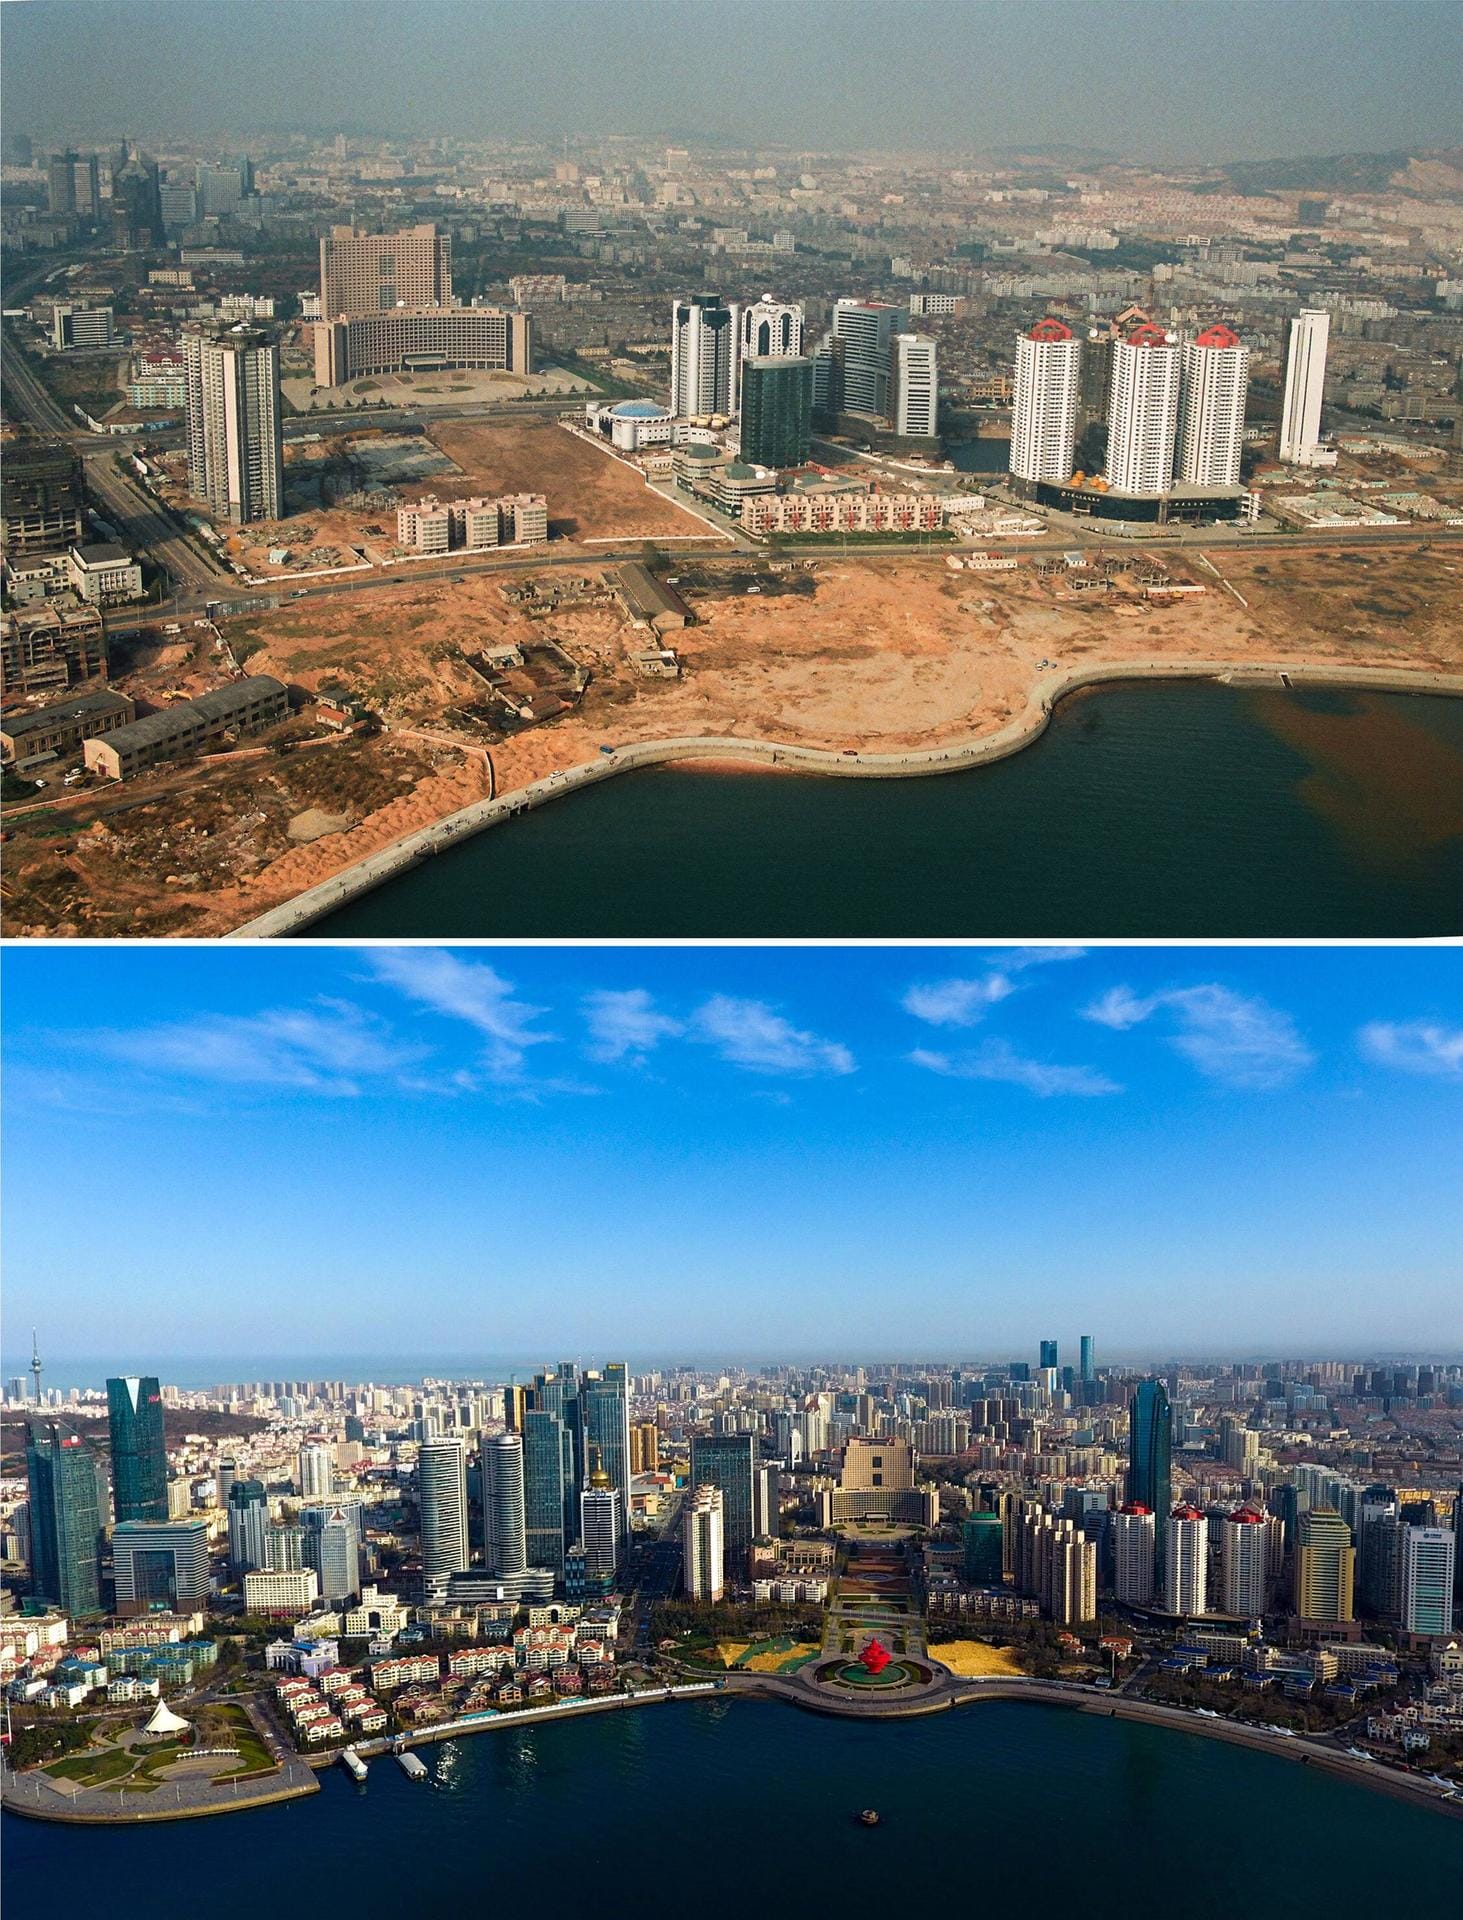 QINGDAO: Der Wusi-Platz im Jahr 1996 und 2018 im Vergleich. Qingdao hat sich binnen weniger Jahre zu einer prosperierenden Hafenstadt mit vier Millionen Einwohnern entwickelt.